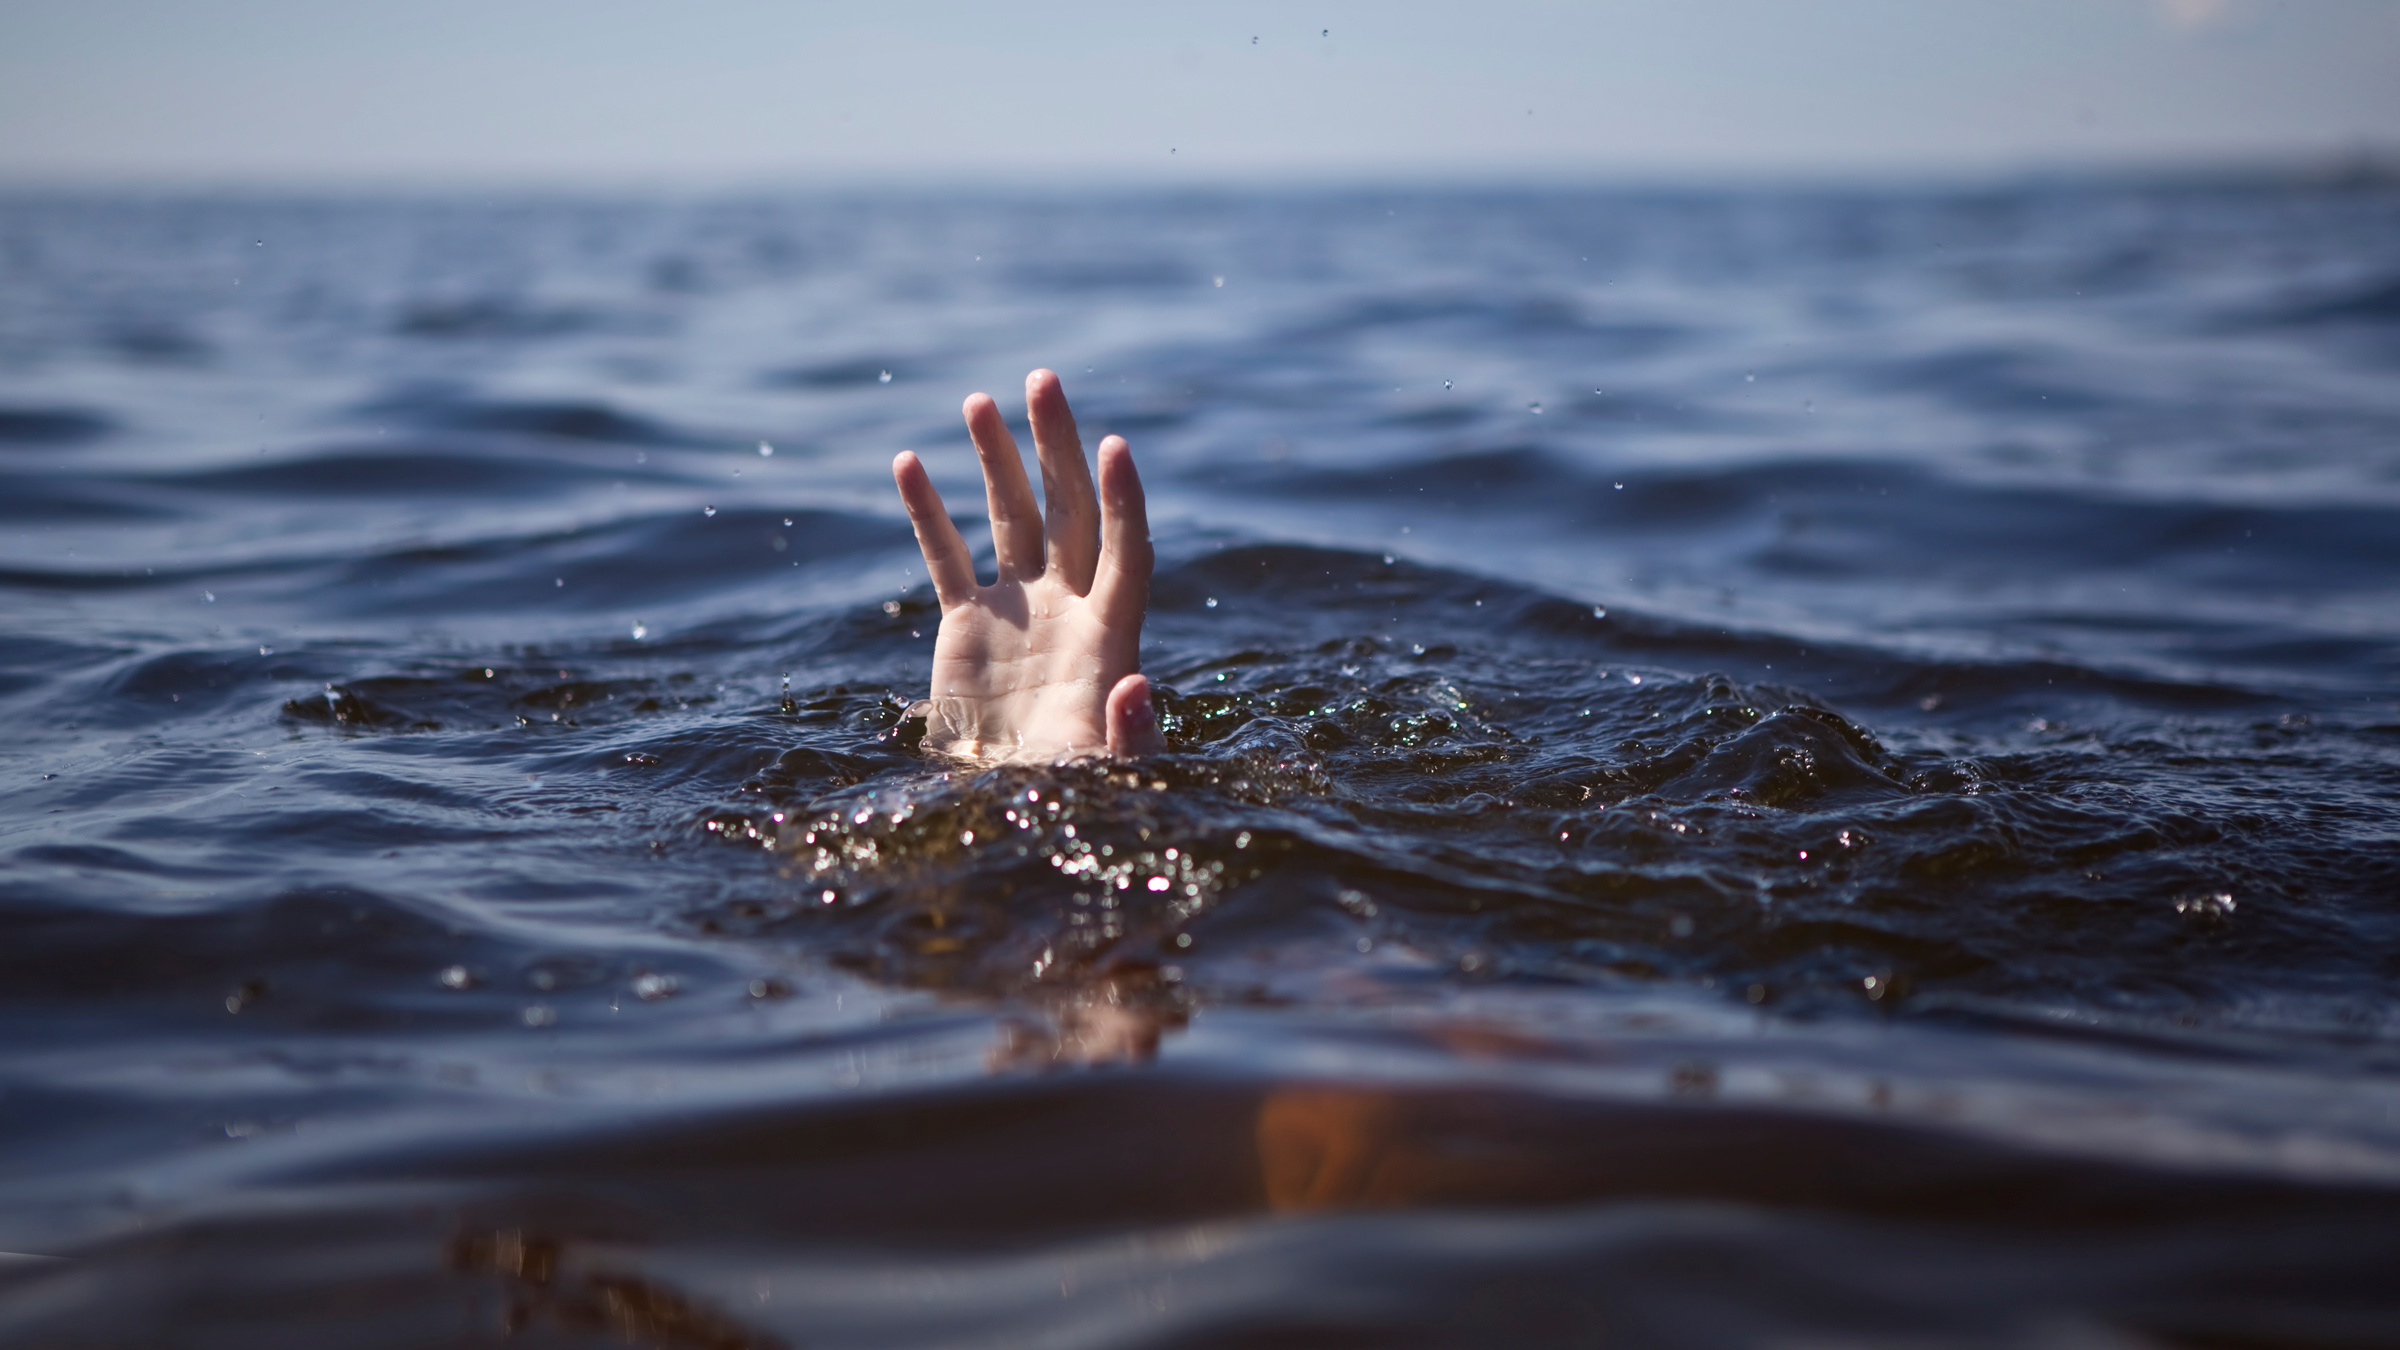 Вода уносит жизни. Тонущий человек. Человек тонет в море. Тонет в воде. Рука из воды.